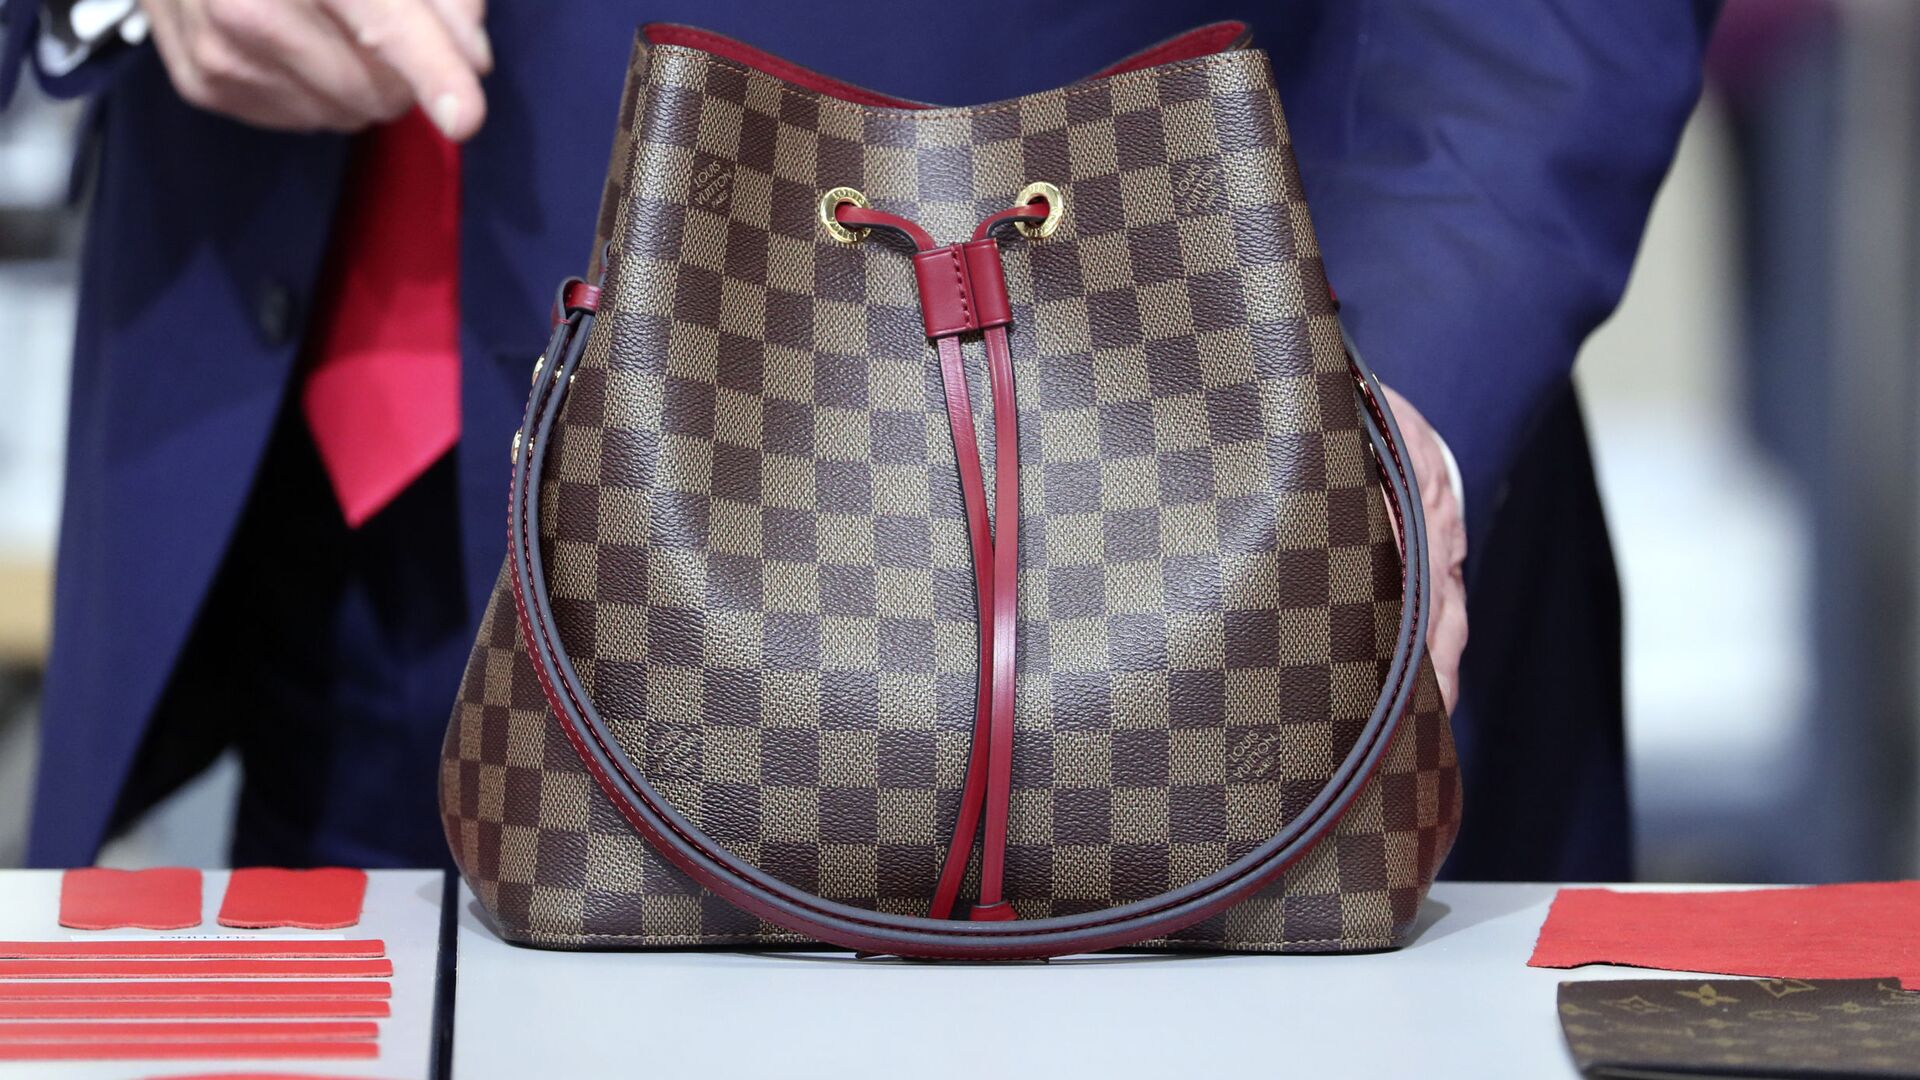 Jefa le regala bolsa Louis Vuitton falsa